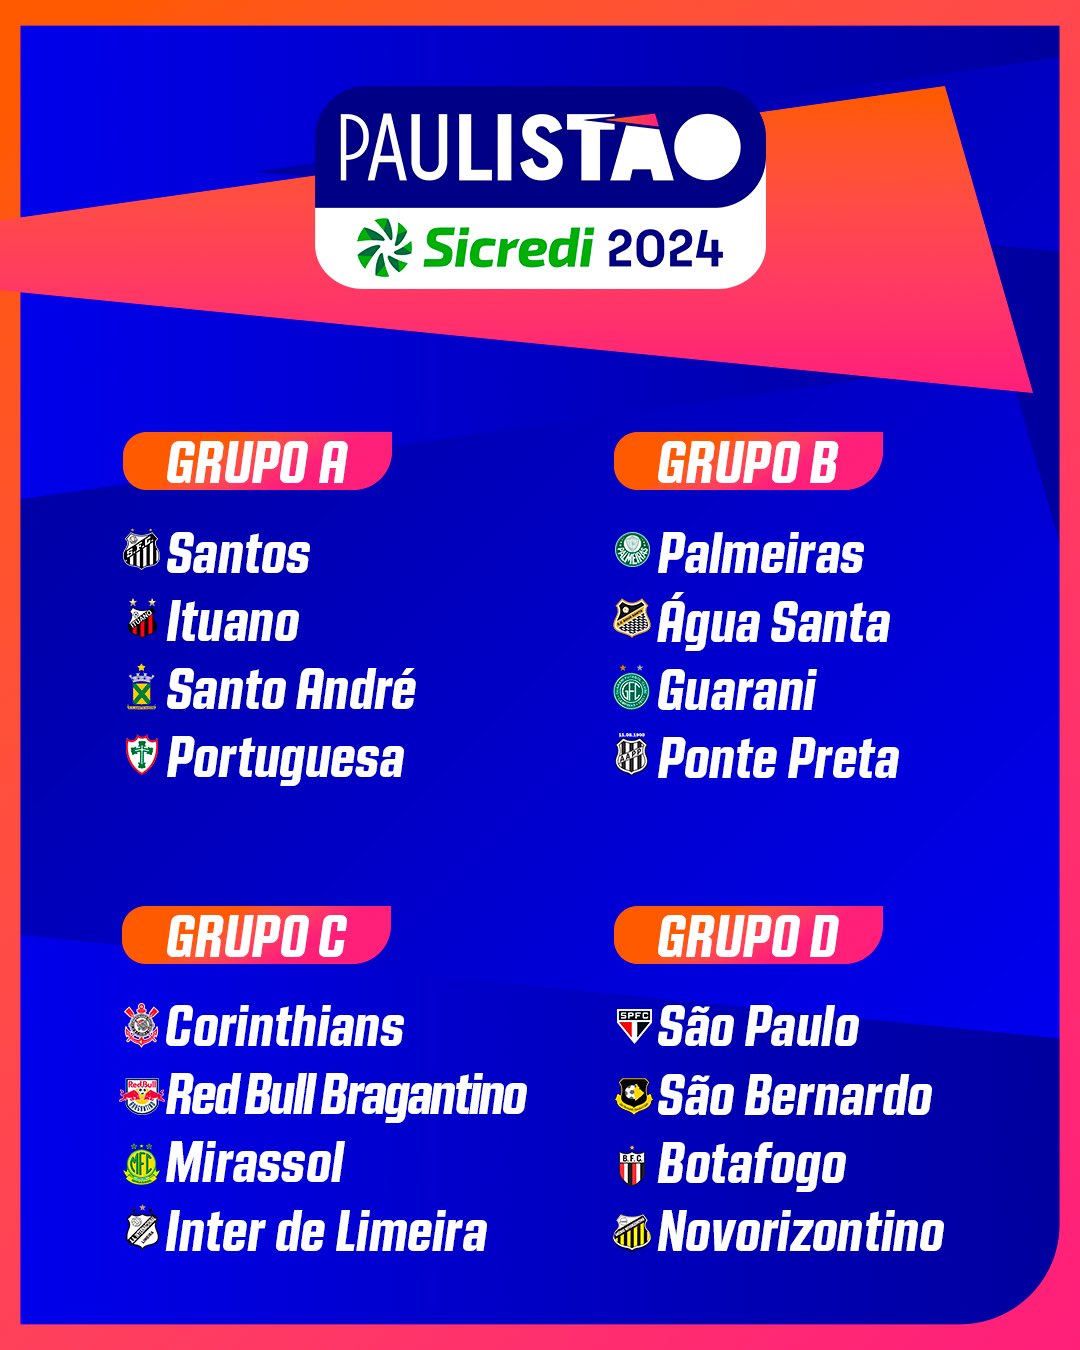 Paulistão on X: QUANDO SURGE O ALVIVERDE IMPONENTE! 🏆 PALMEIRAS, CAMPEÃO  DO PAULISTÃO SICREDI 2022! #ChoqueReiFinal #FutebolPaulista #Paulistao22   / X